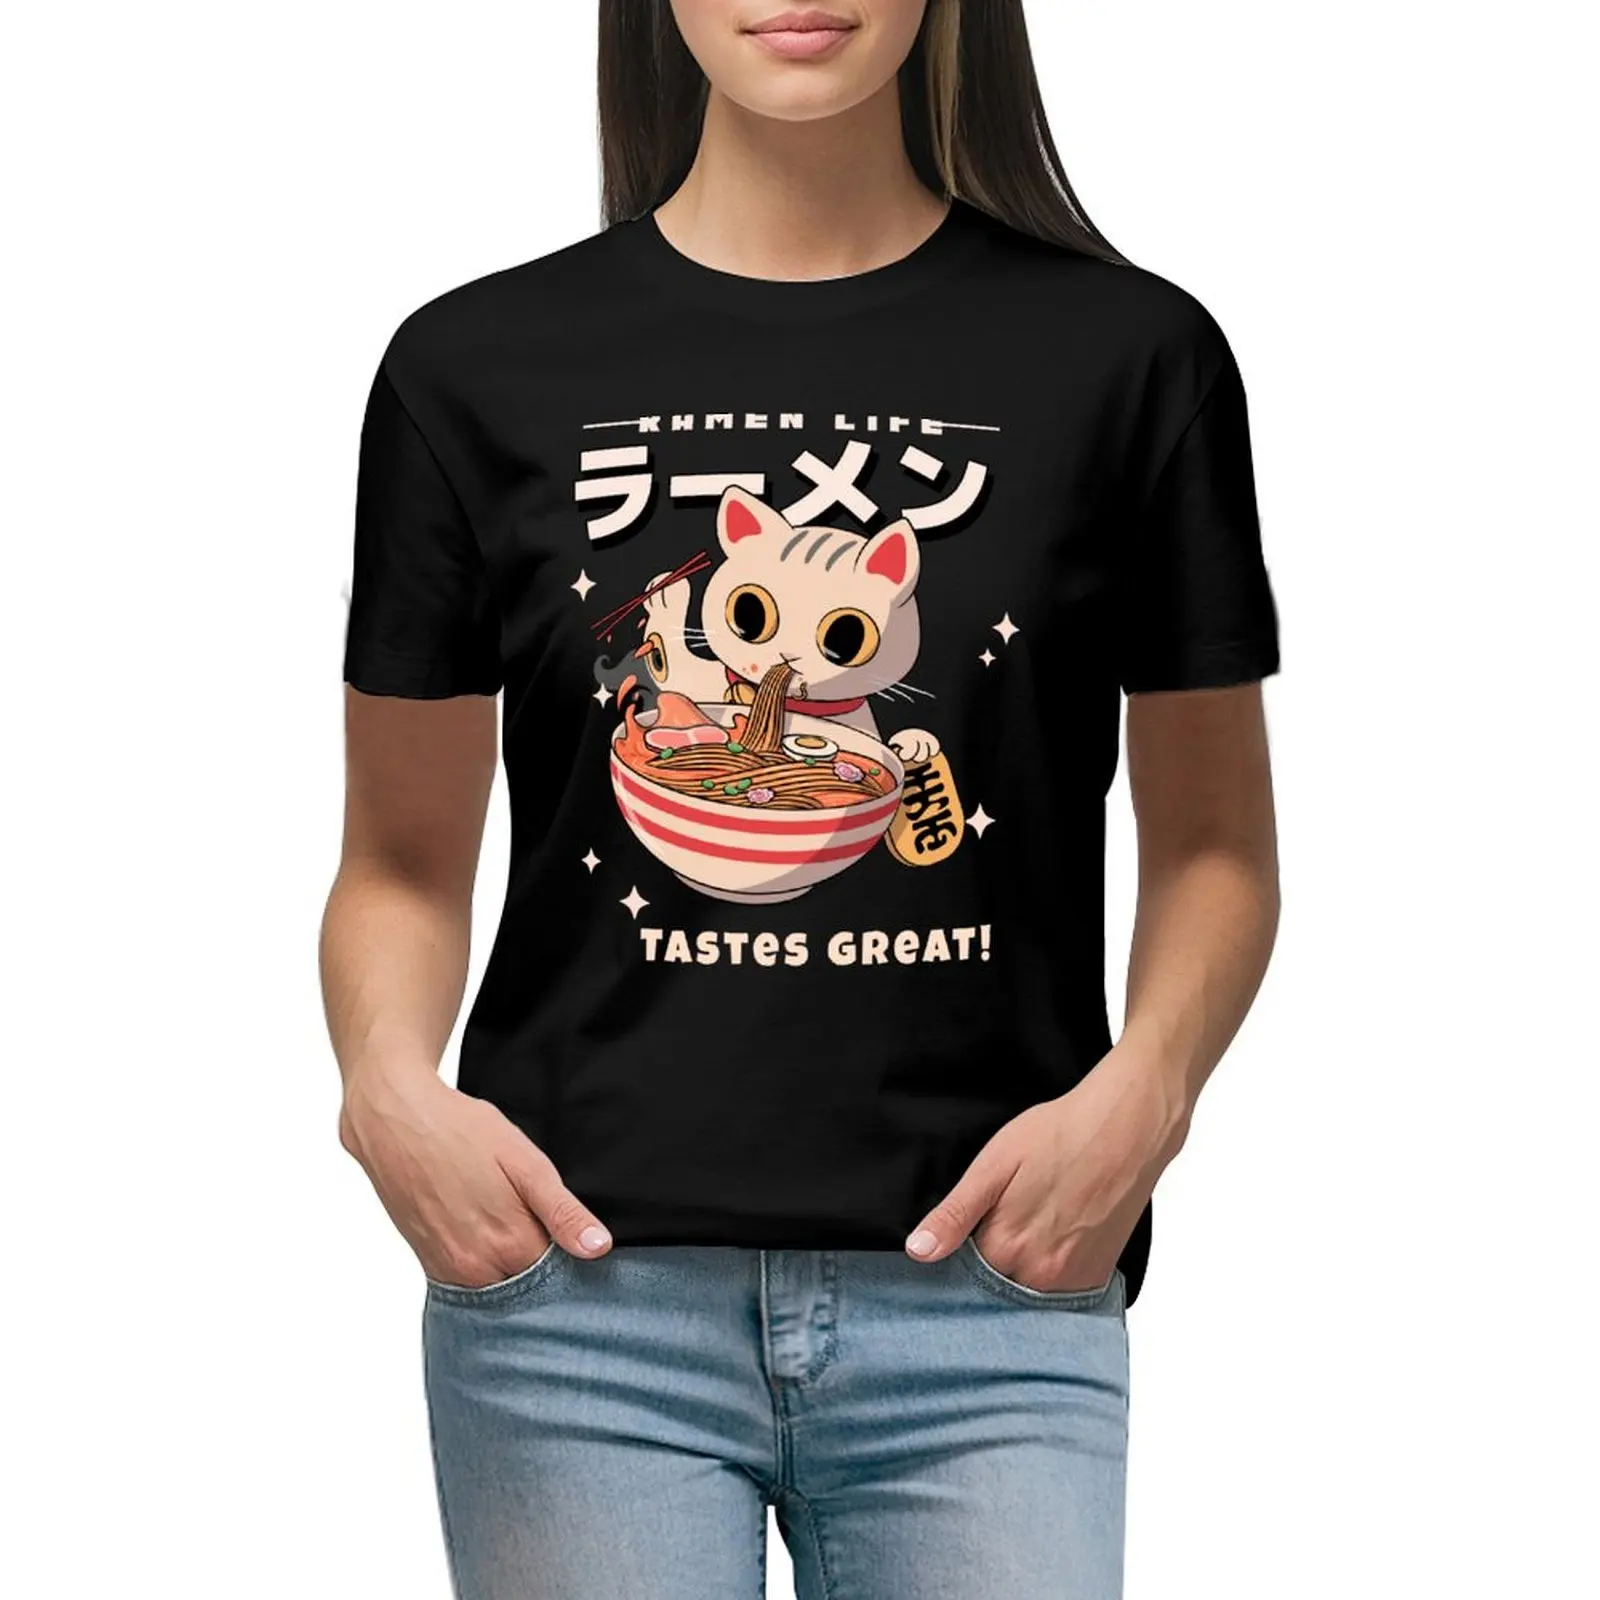 

Kitten Eating Ramen- Ramen Life Tastes Great! T-shirt cute tops Short sleeve tee clothes for Women